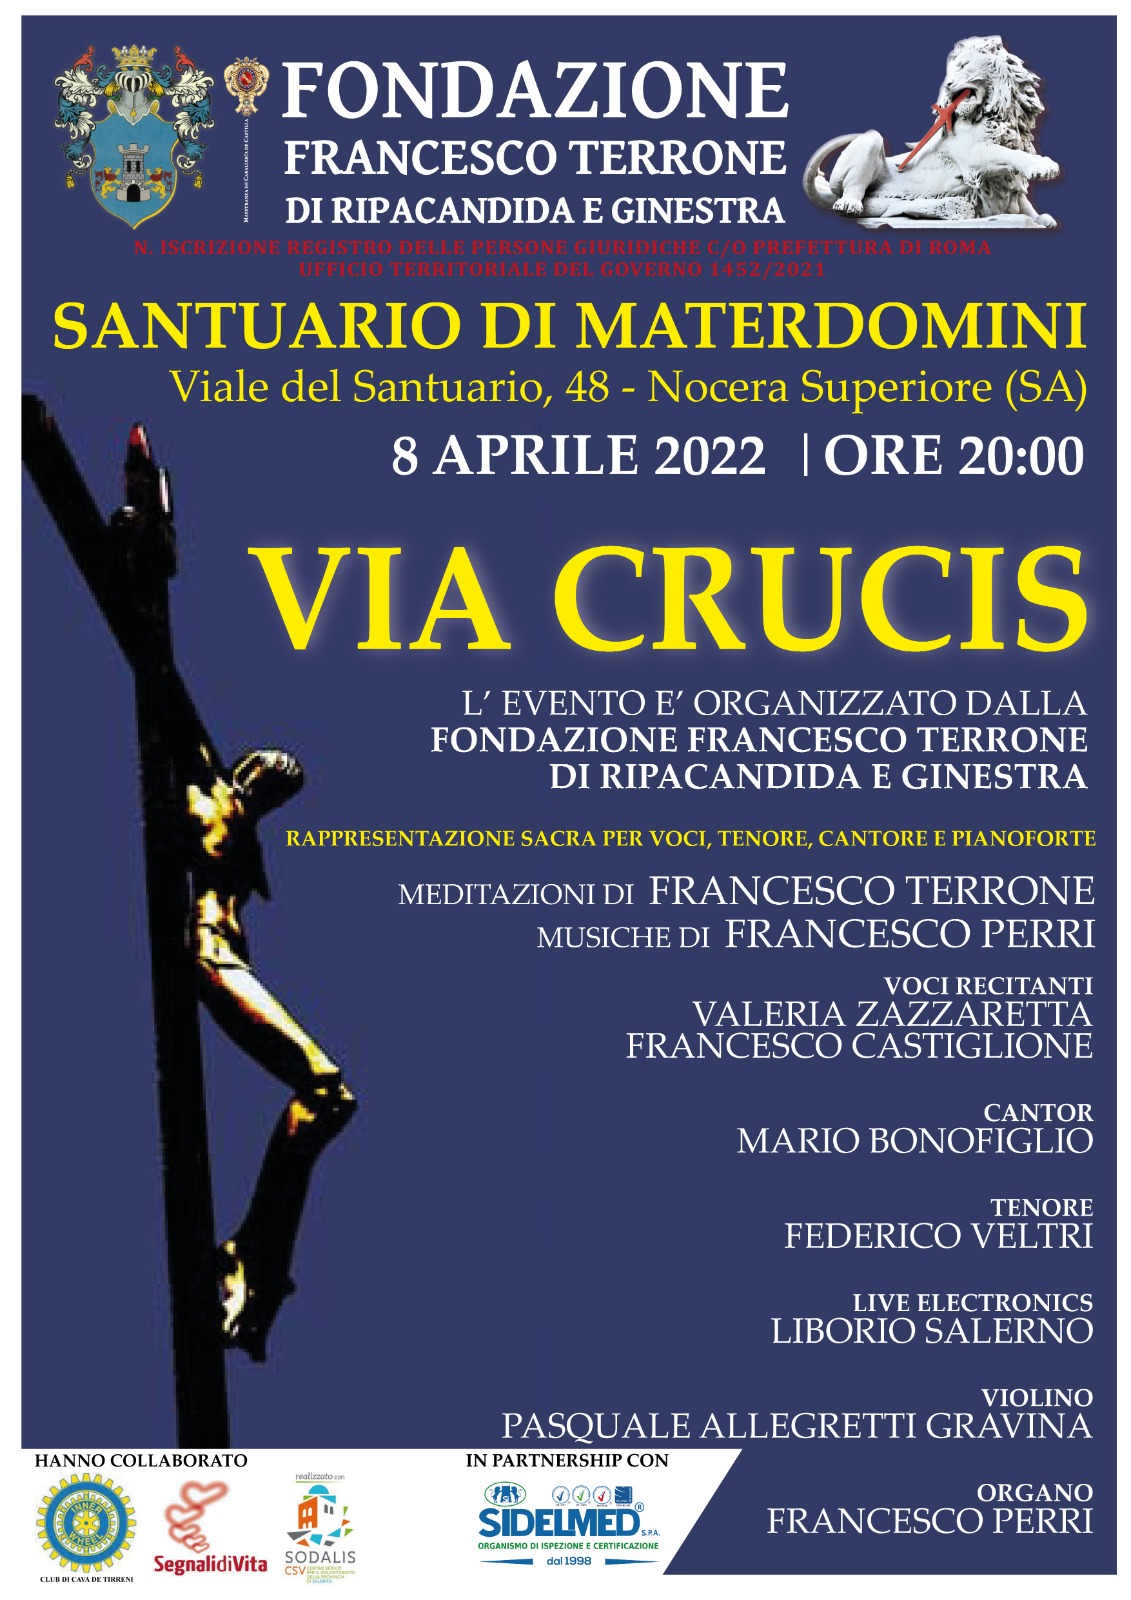 Nocera Superiore: Materdomini, al Santuario rappresentazione sacra “Via Crucis” di Francesco Terrone